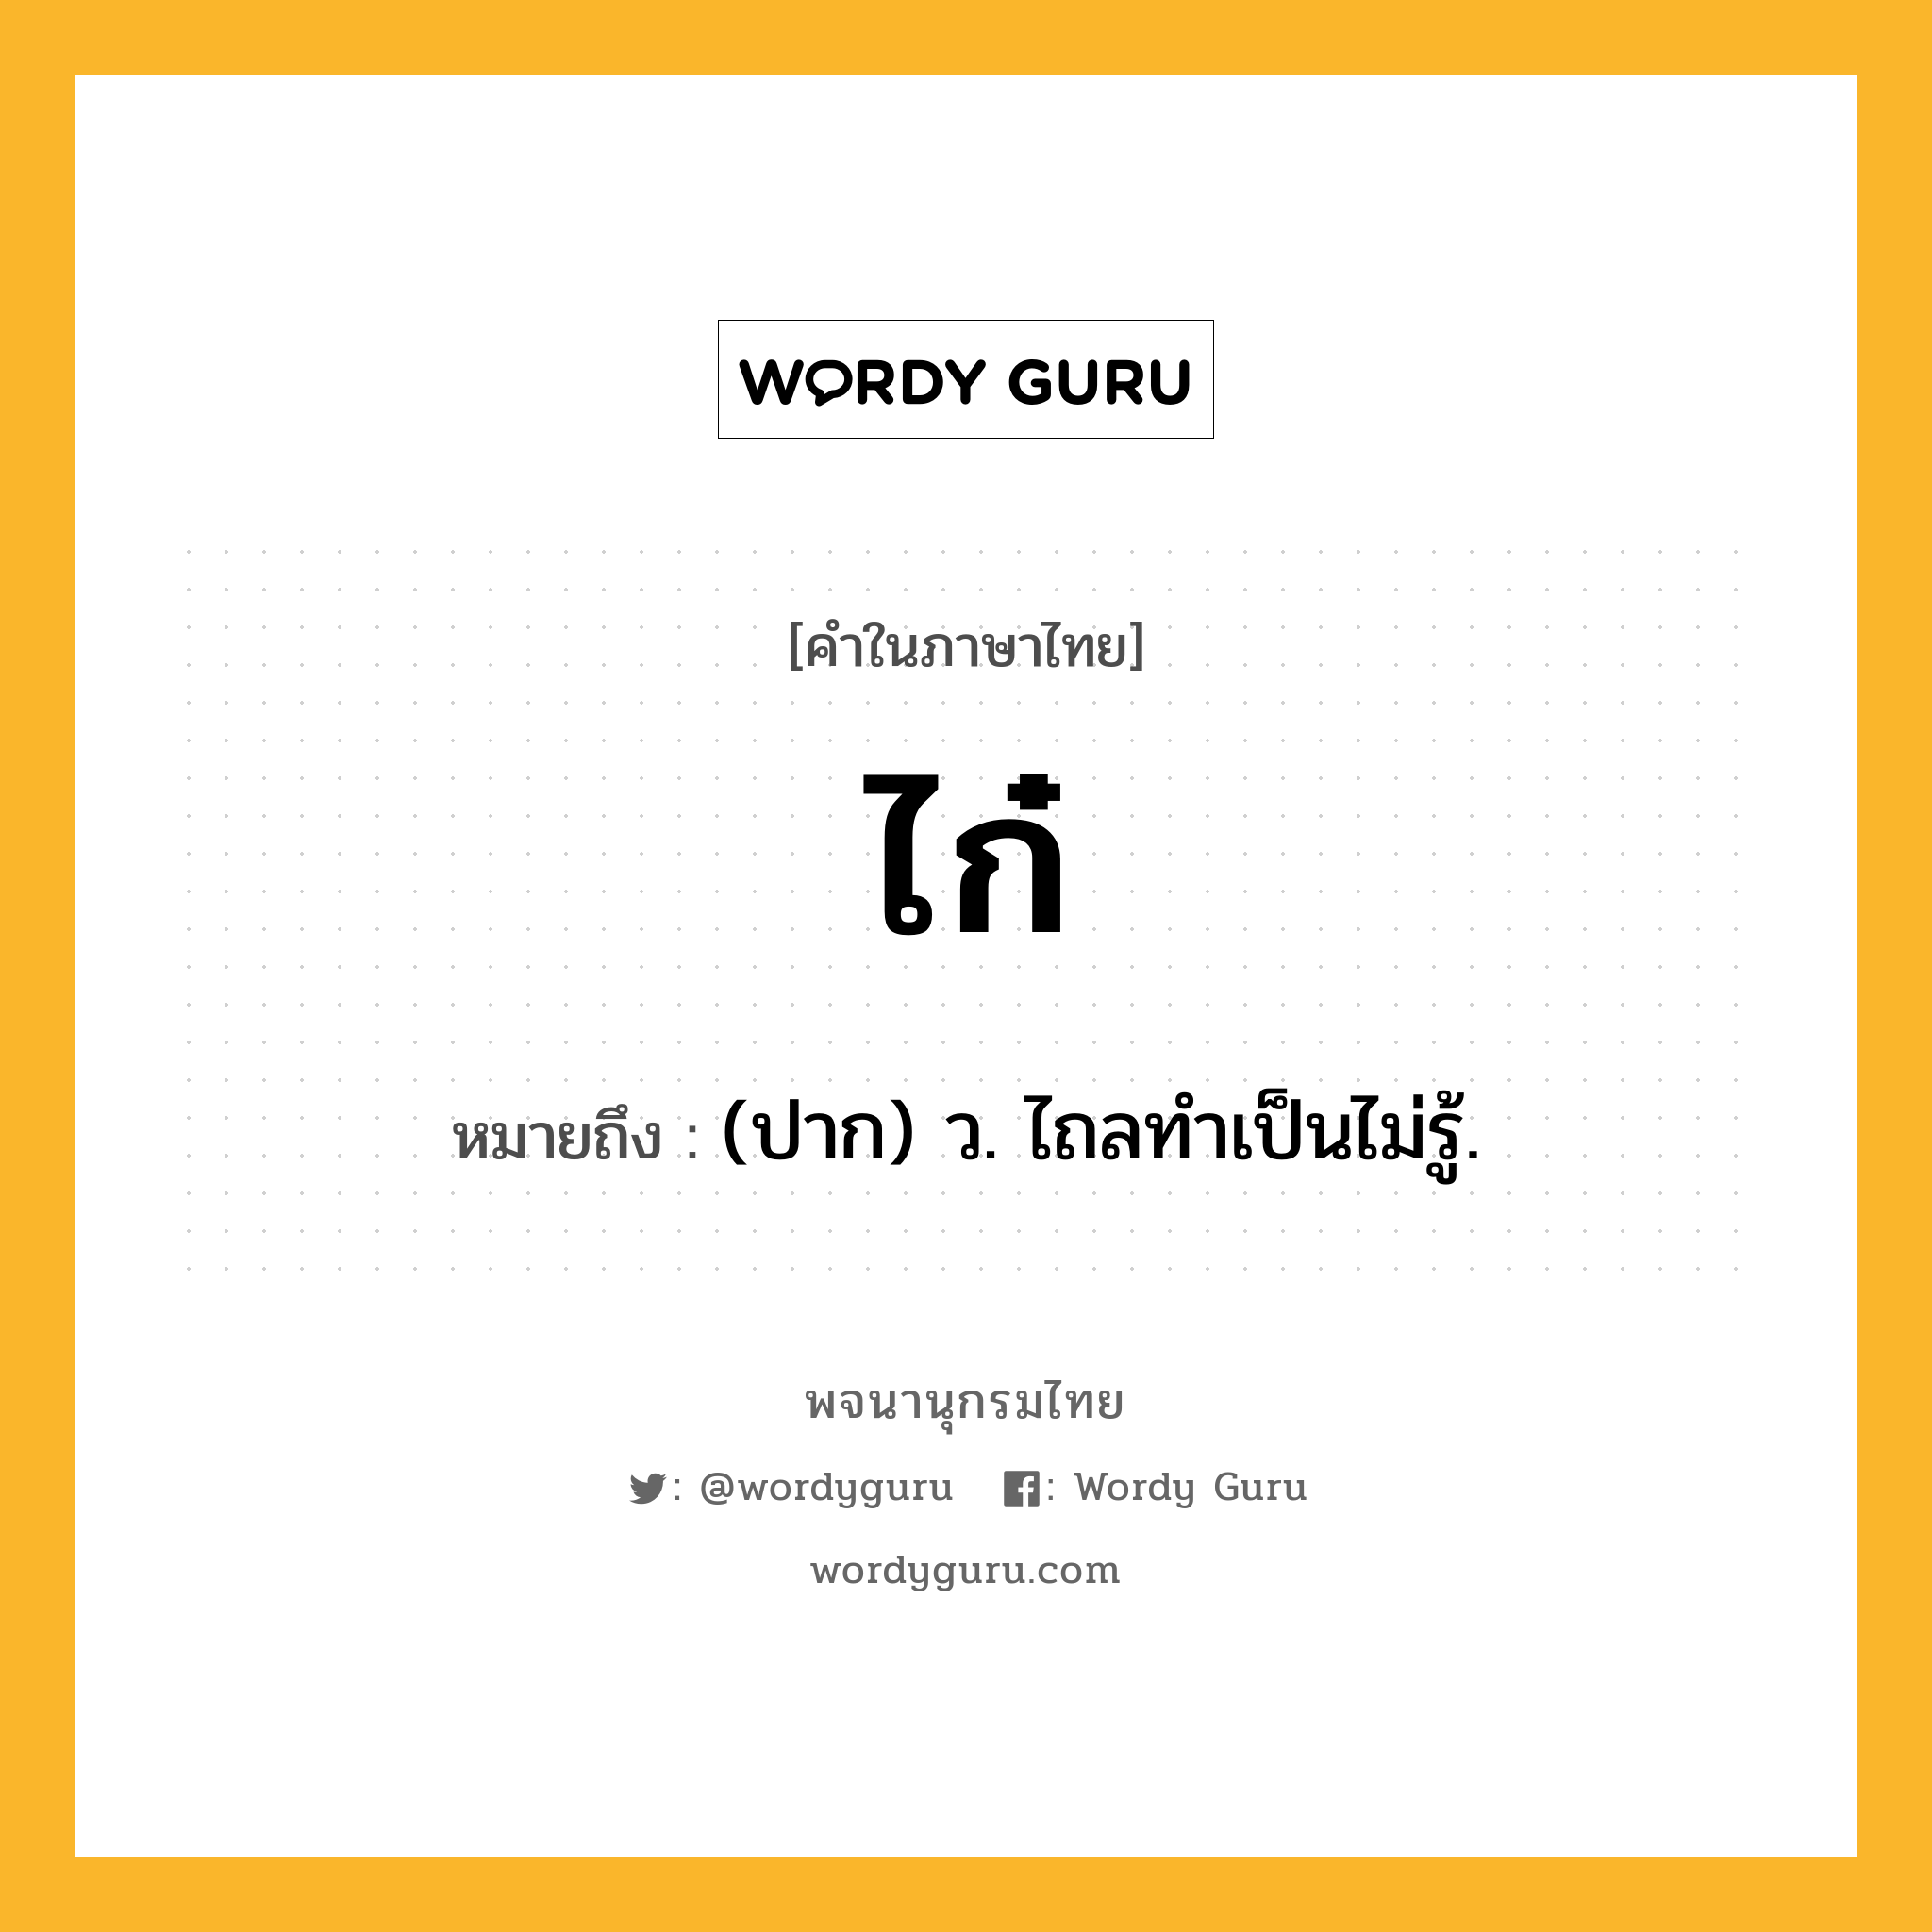 ไก๋ หมายถึงอะไร?, คำในภาษาไทย ไก๋ หมายถึง (ปาก) ว. ไถลทําเป็นไม่รู้.